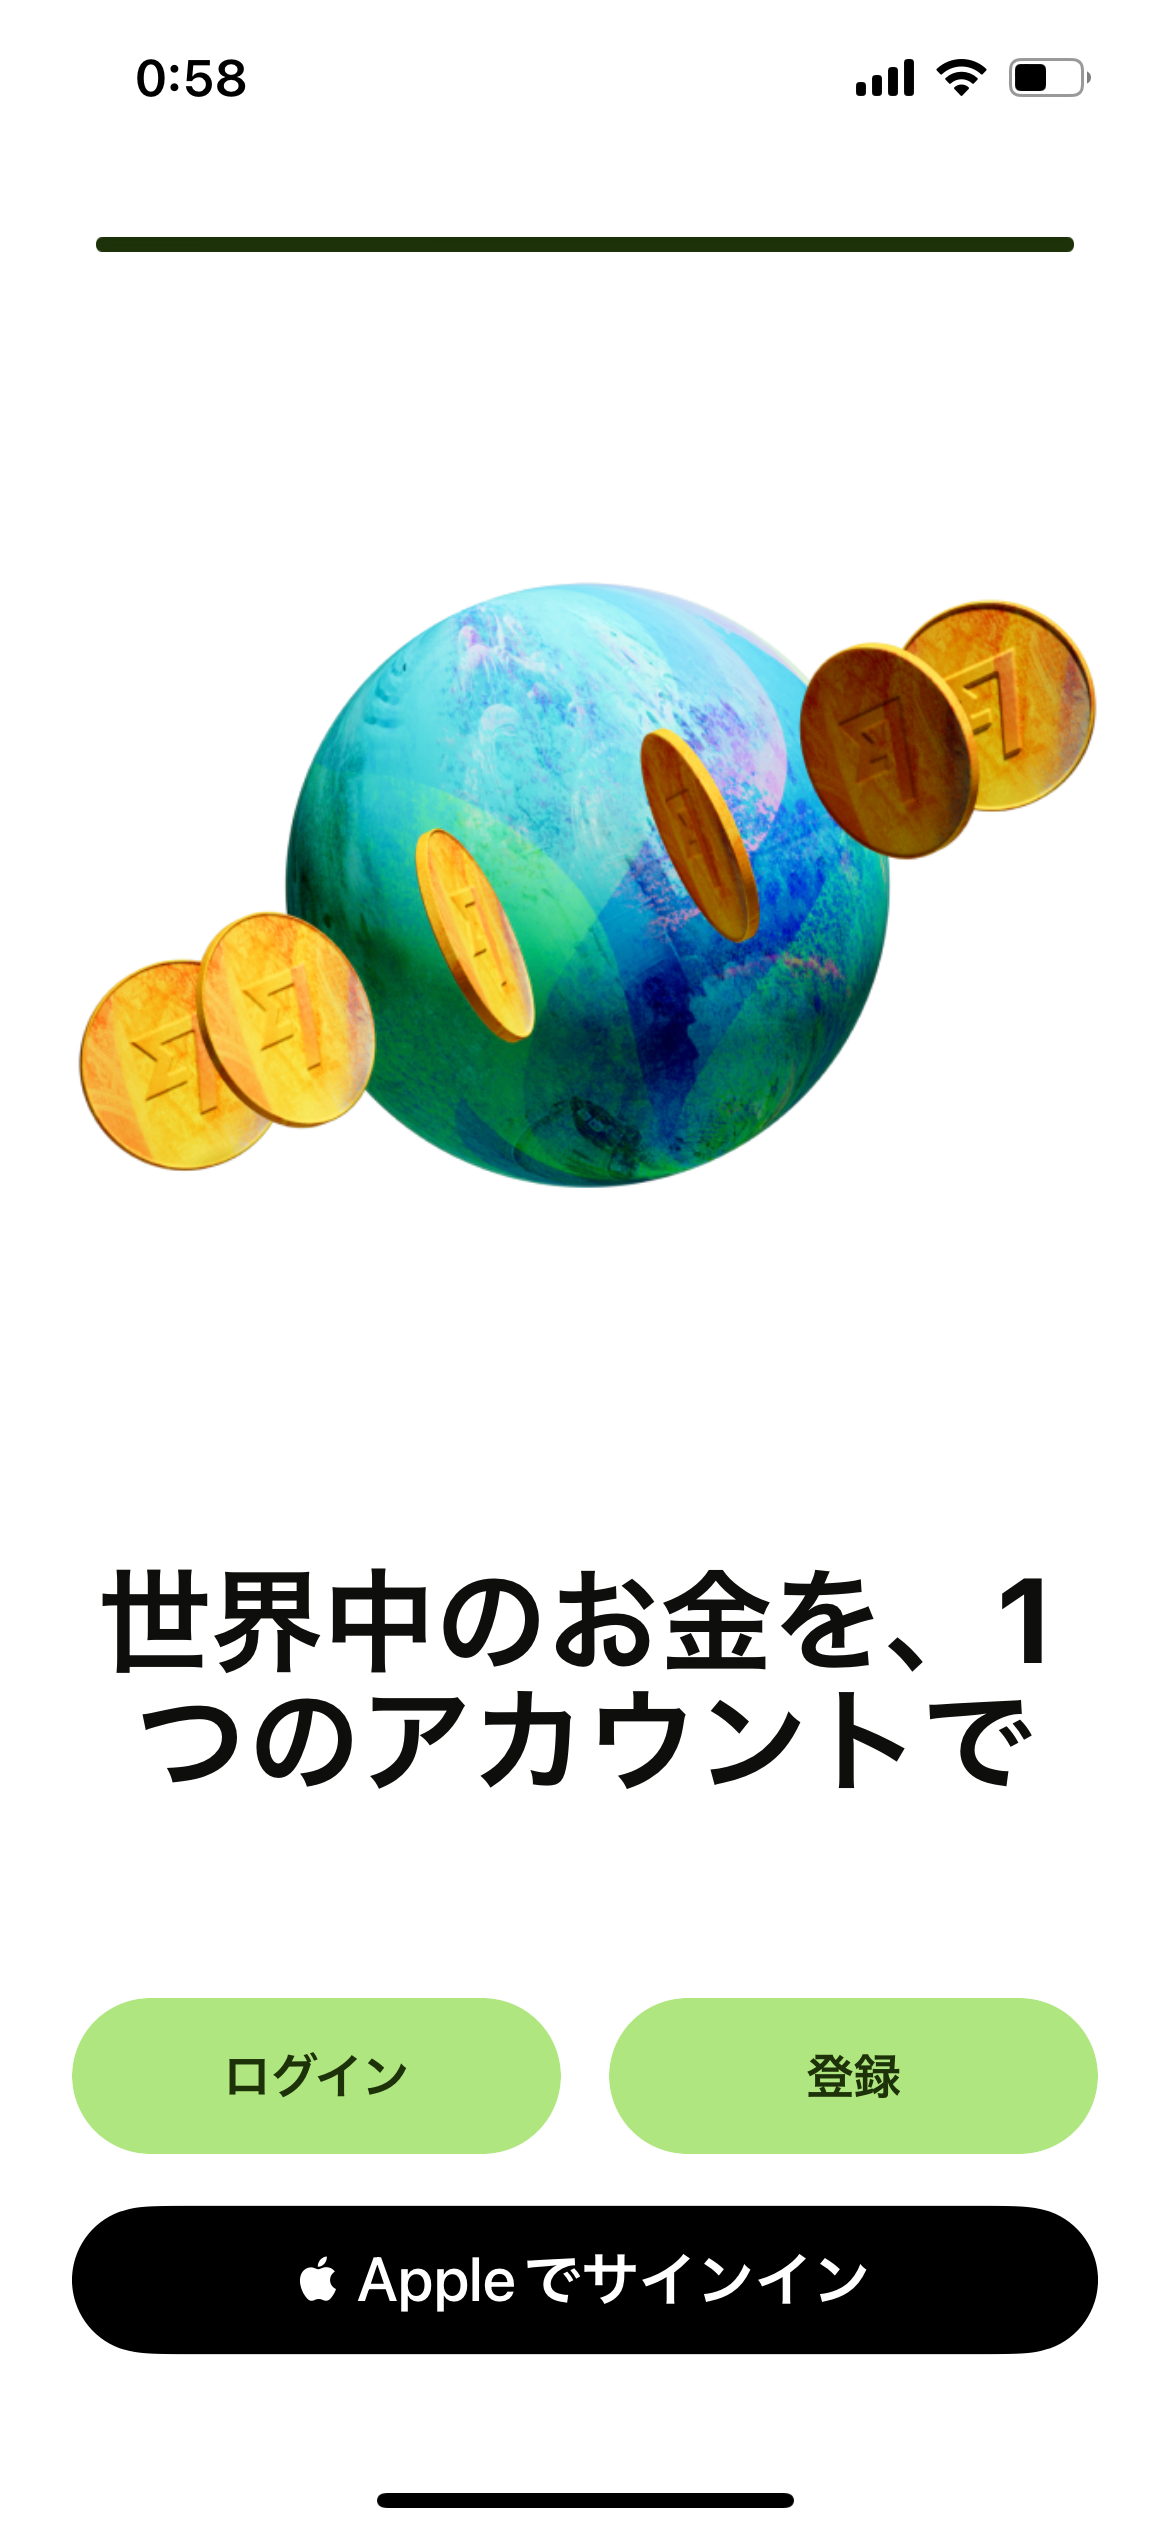 日本から韓国への送金サービスWise（ワイズ）のアカウント作成方法